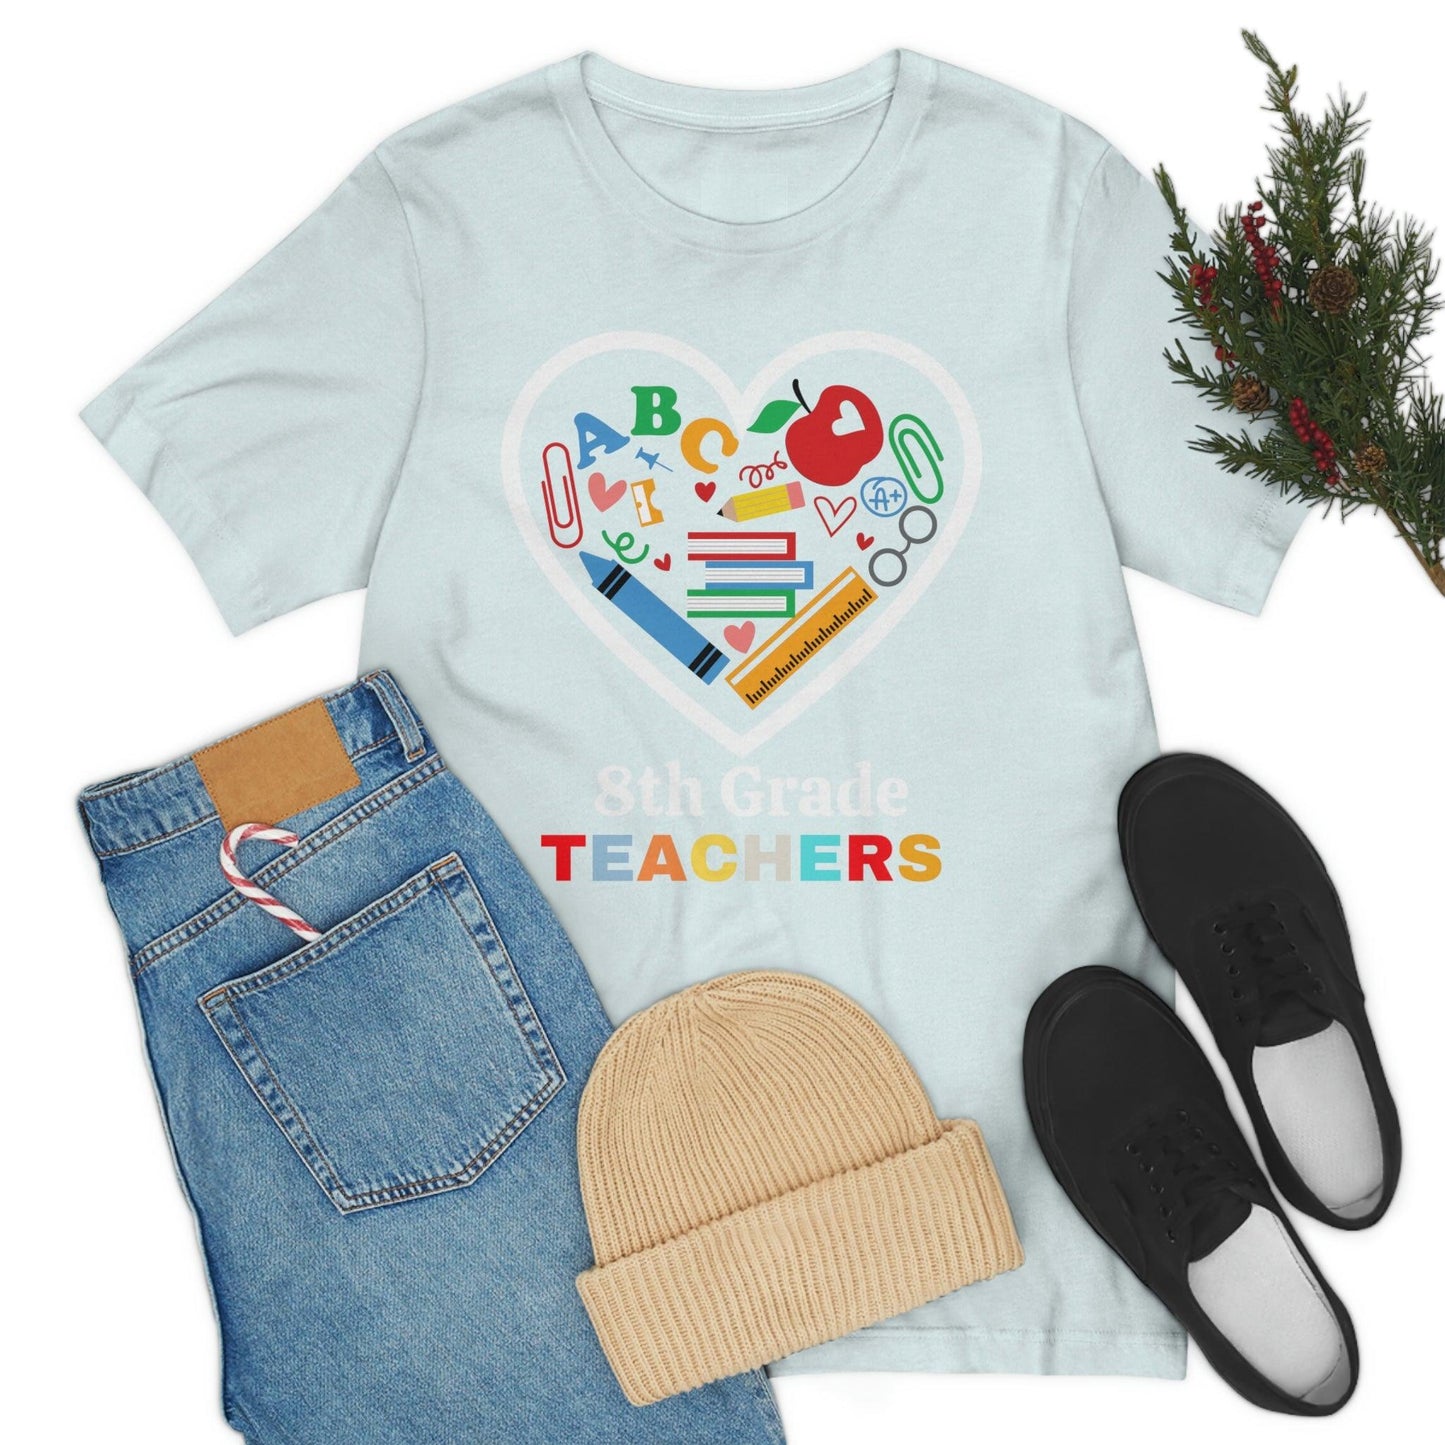 Love 8th Grade Teacher Shirt - Teacher Appreciation Shirt - Gift for Teachers - 8th Grade shirt